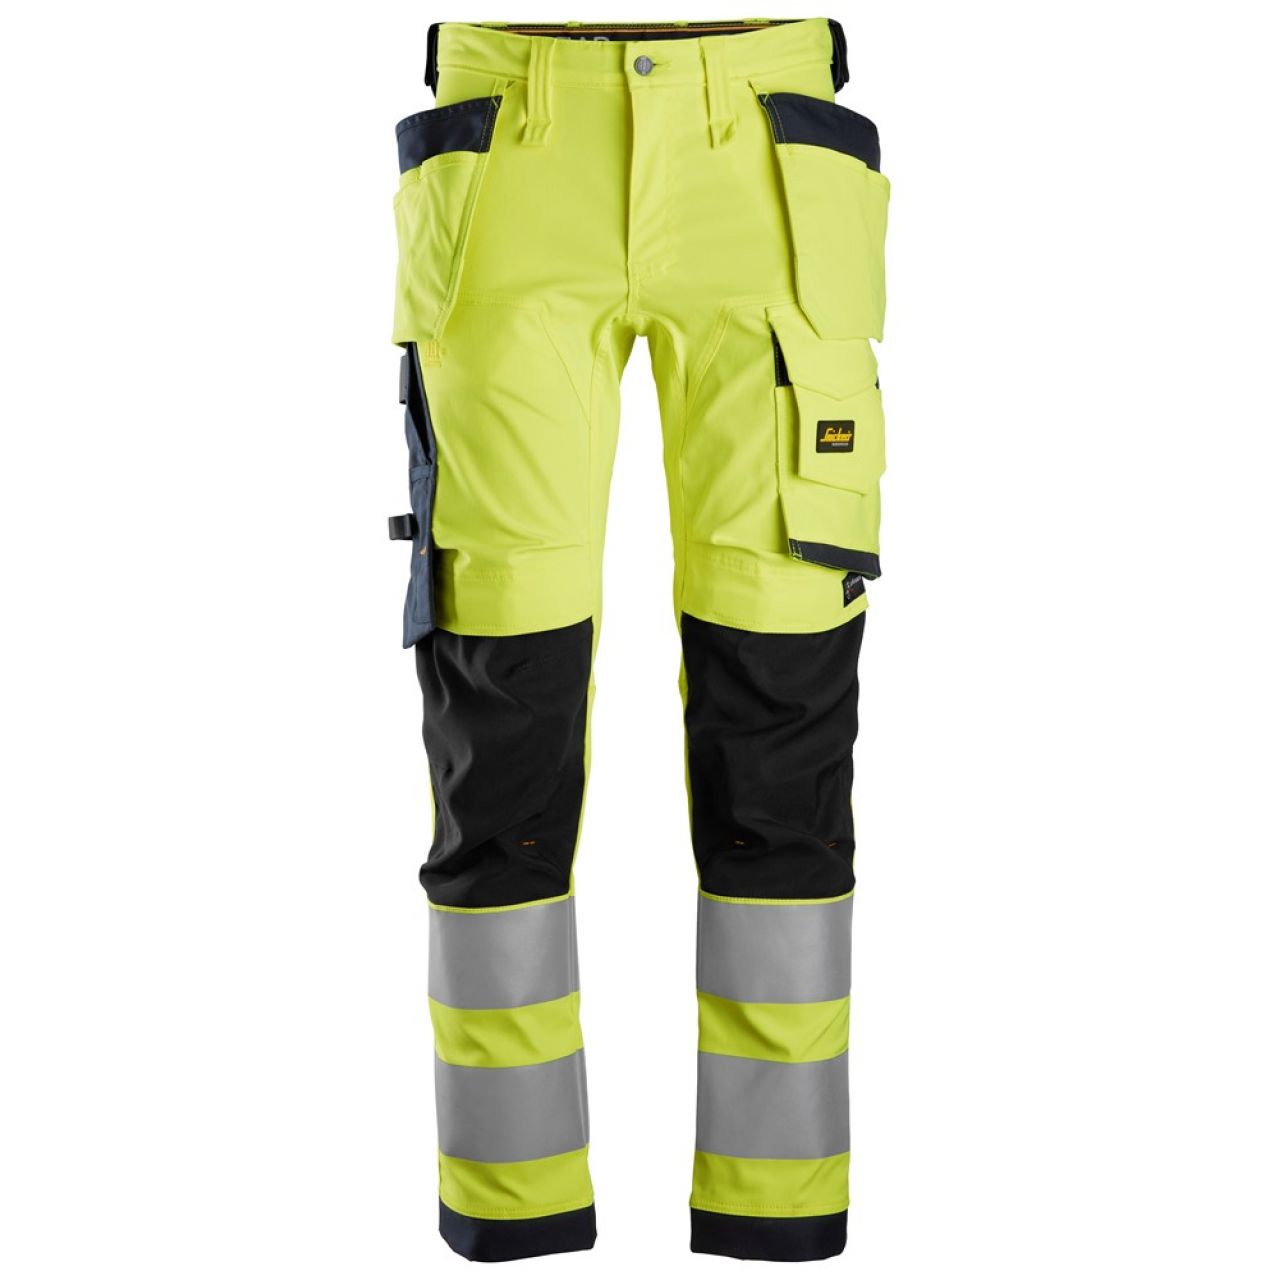 6243 Pantalones largos de trabajo elásticos de alta visibilidad clase 2 con bolsillos flotantes amarillo-azul marino talla 62